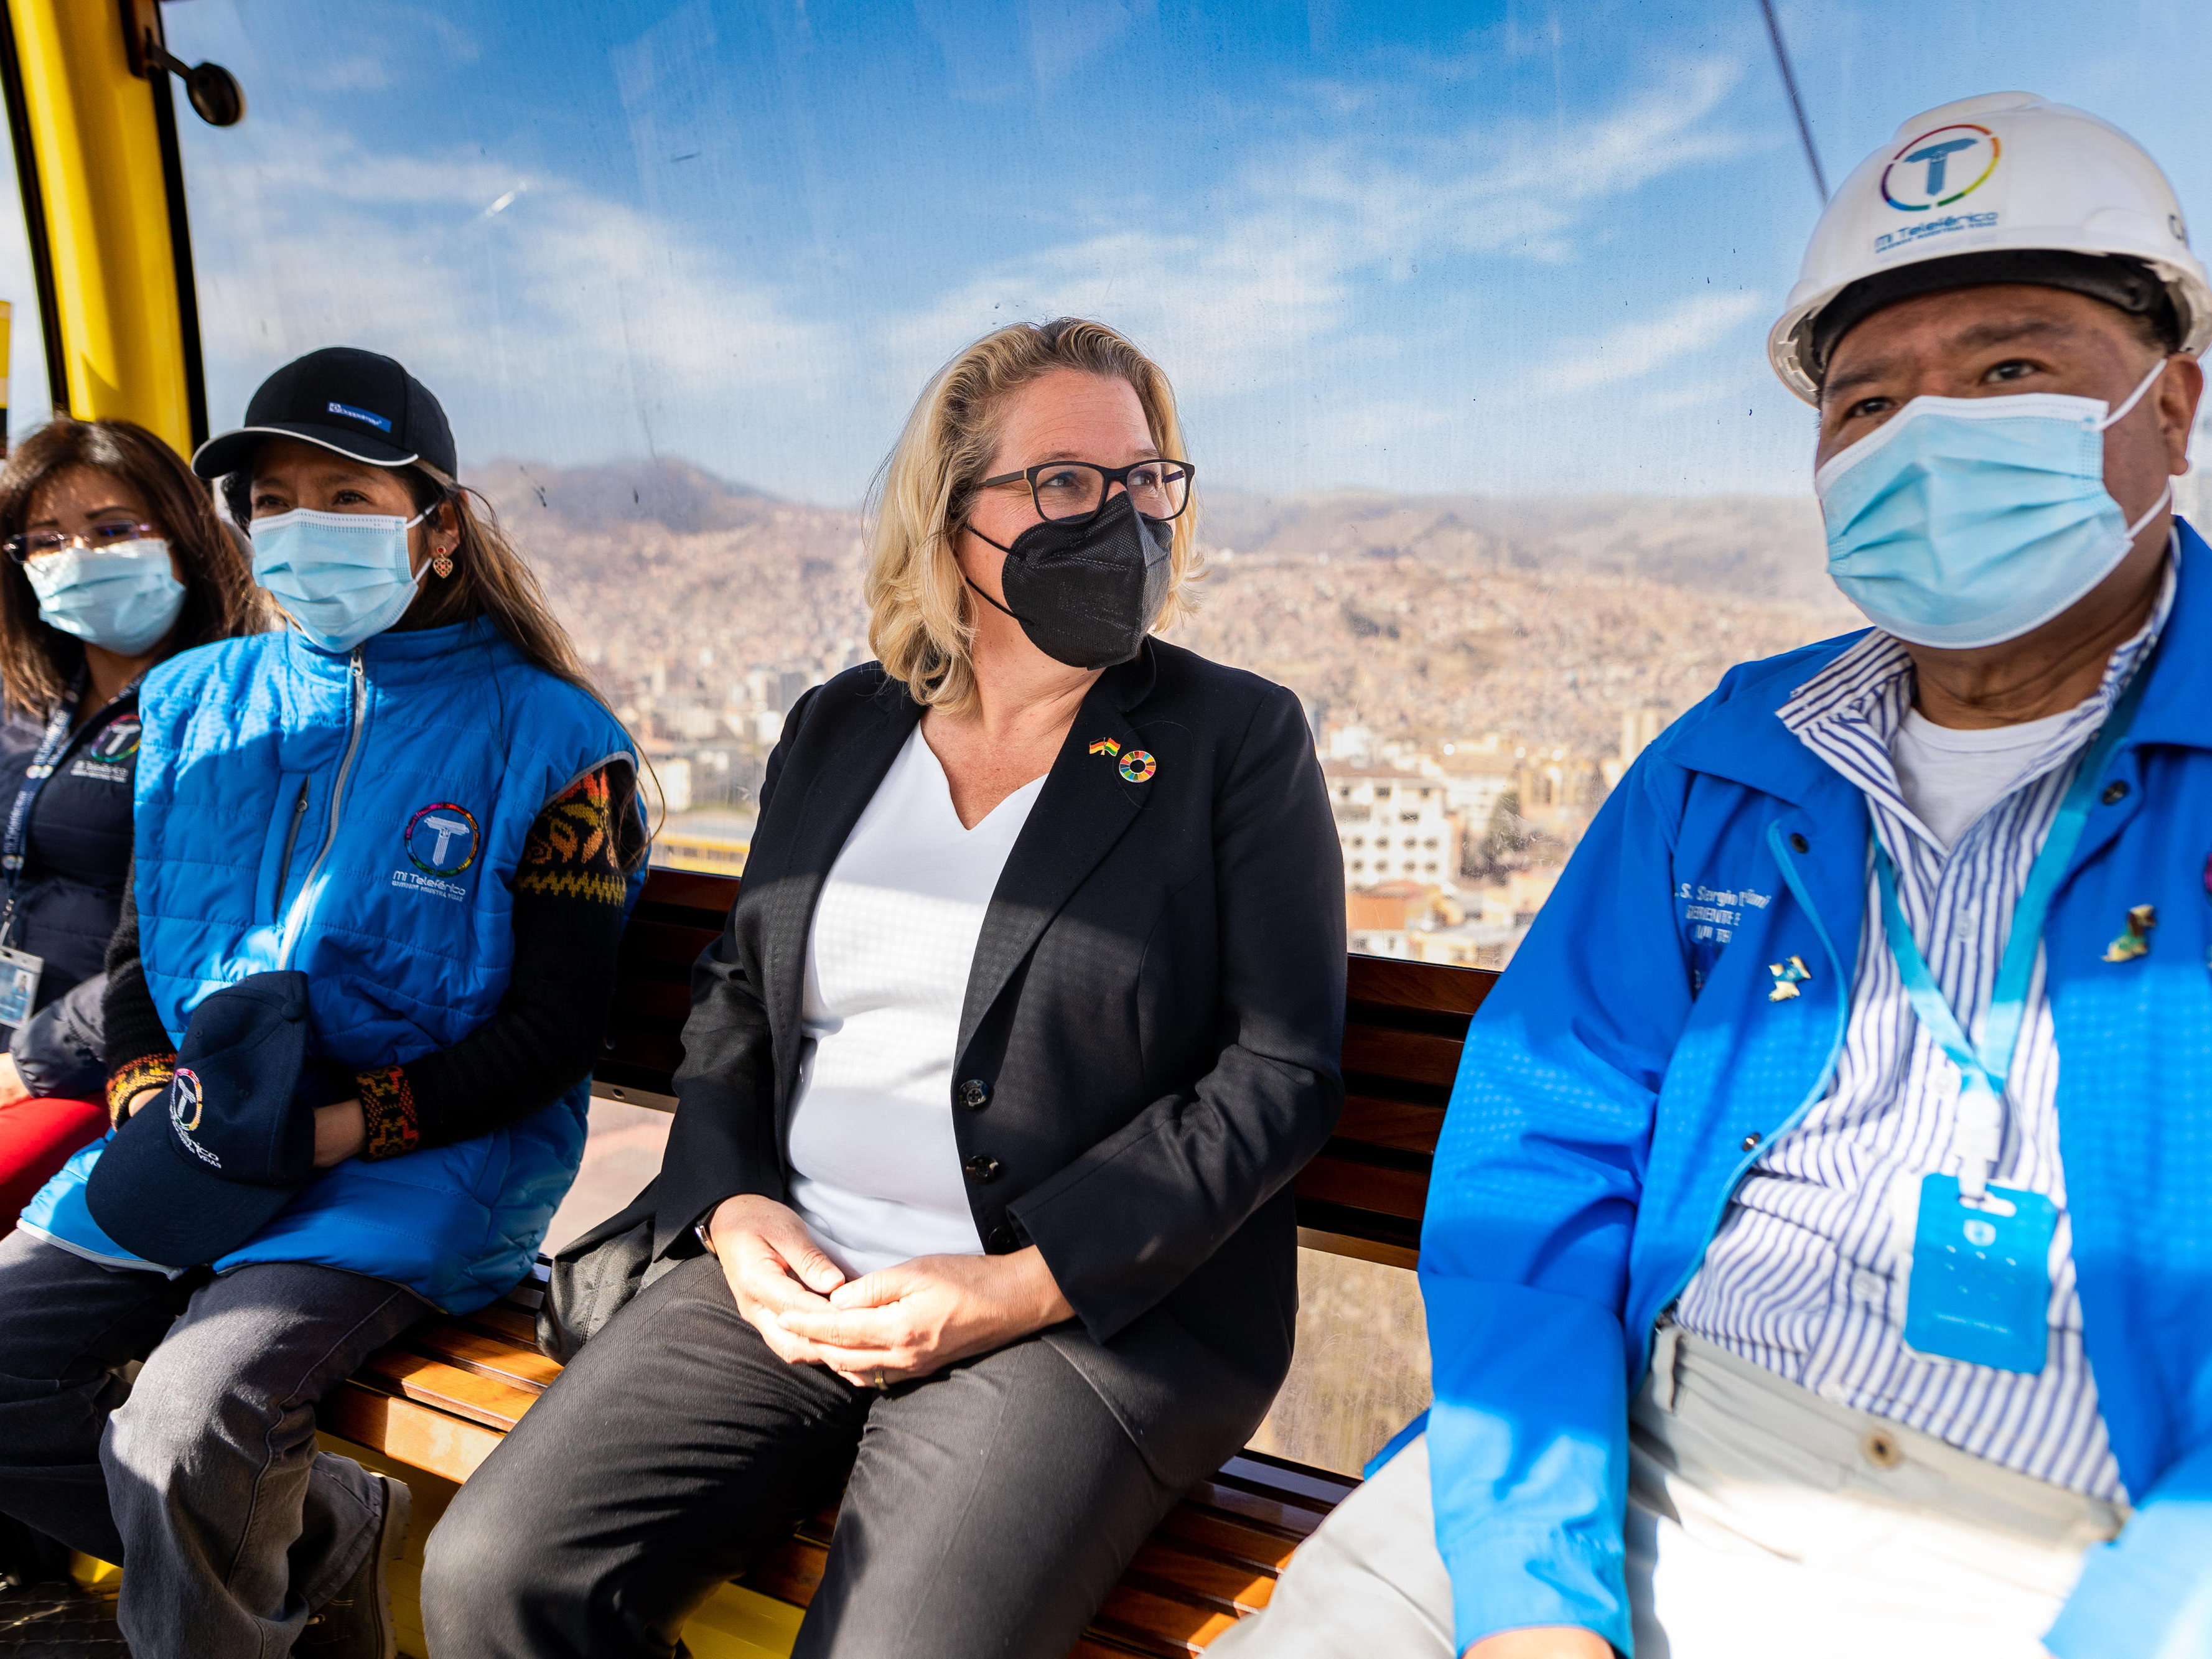 Auf dem Bild sind vier Personen abgebildet, die sich in großer Höhe in einer Art Gondel befinden und Masken tragen – darunter Entwicklungsministerin Svenja Schulze.